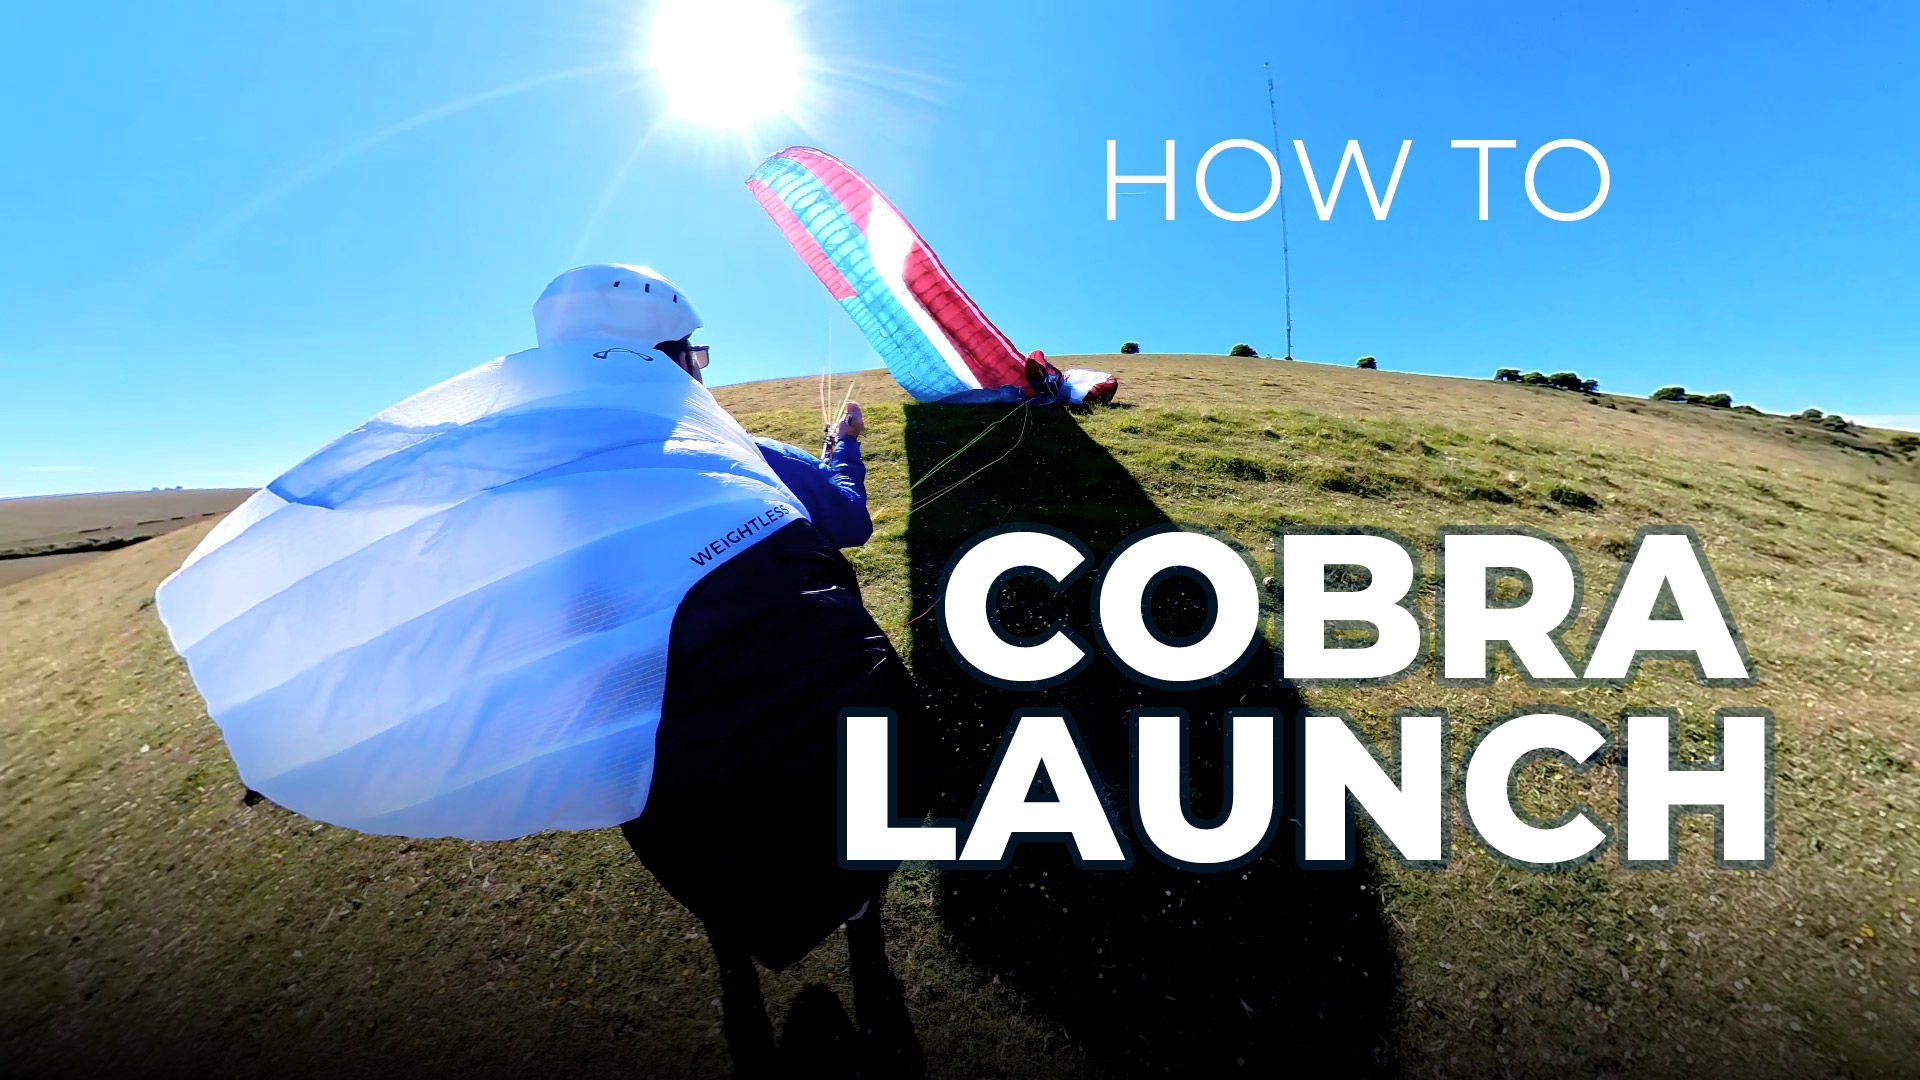 Paragliding Cobra launch